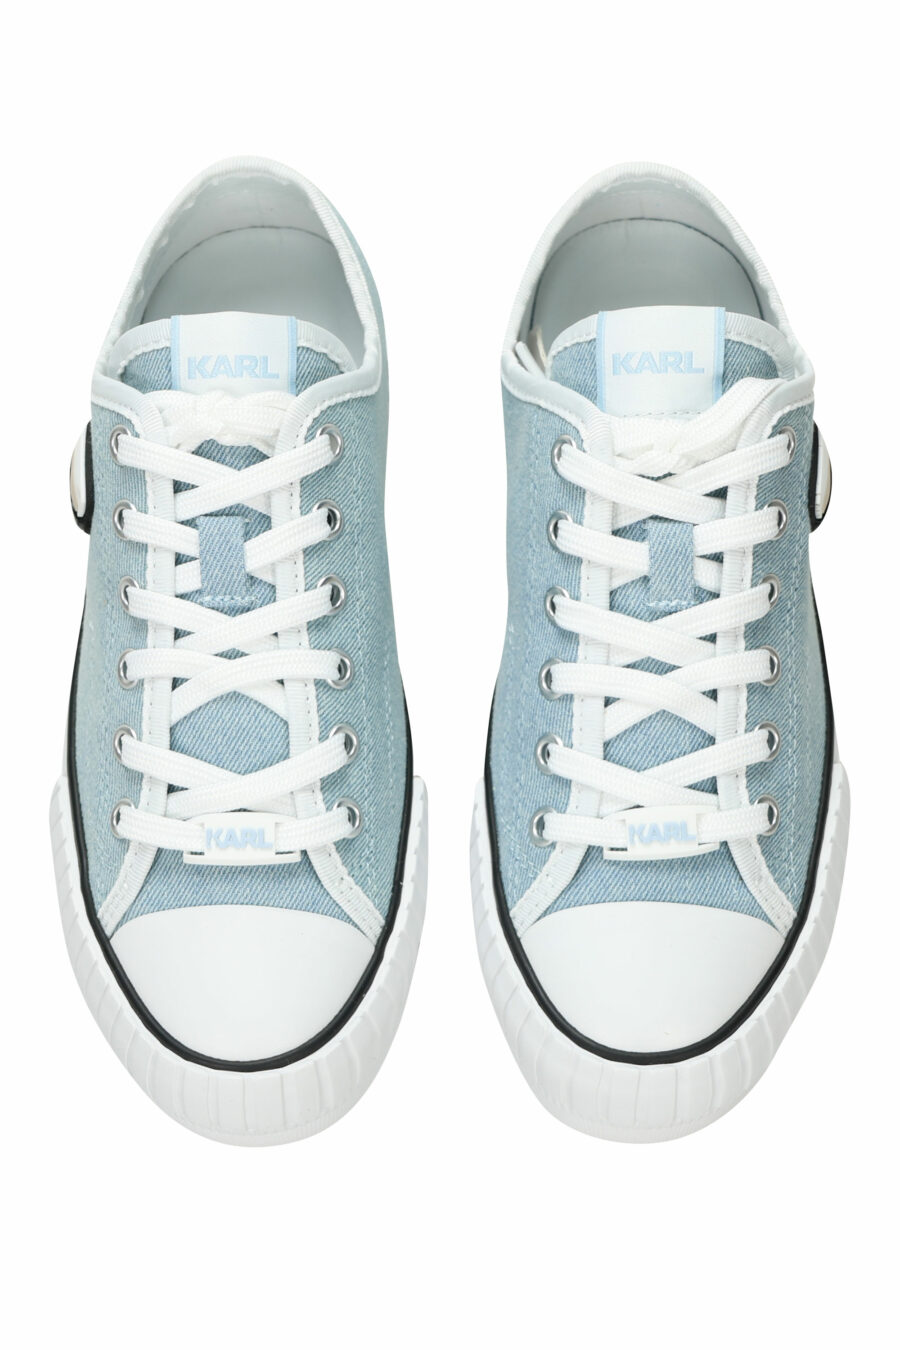 Zapatillas azul claro estilo "converse" con minilogo de goma "karl" - 5059529384691 4